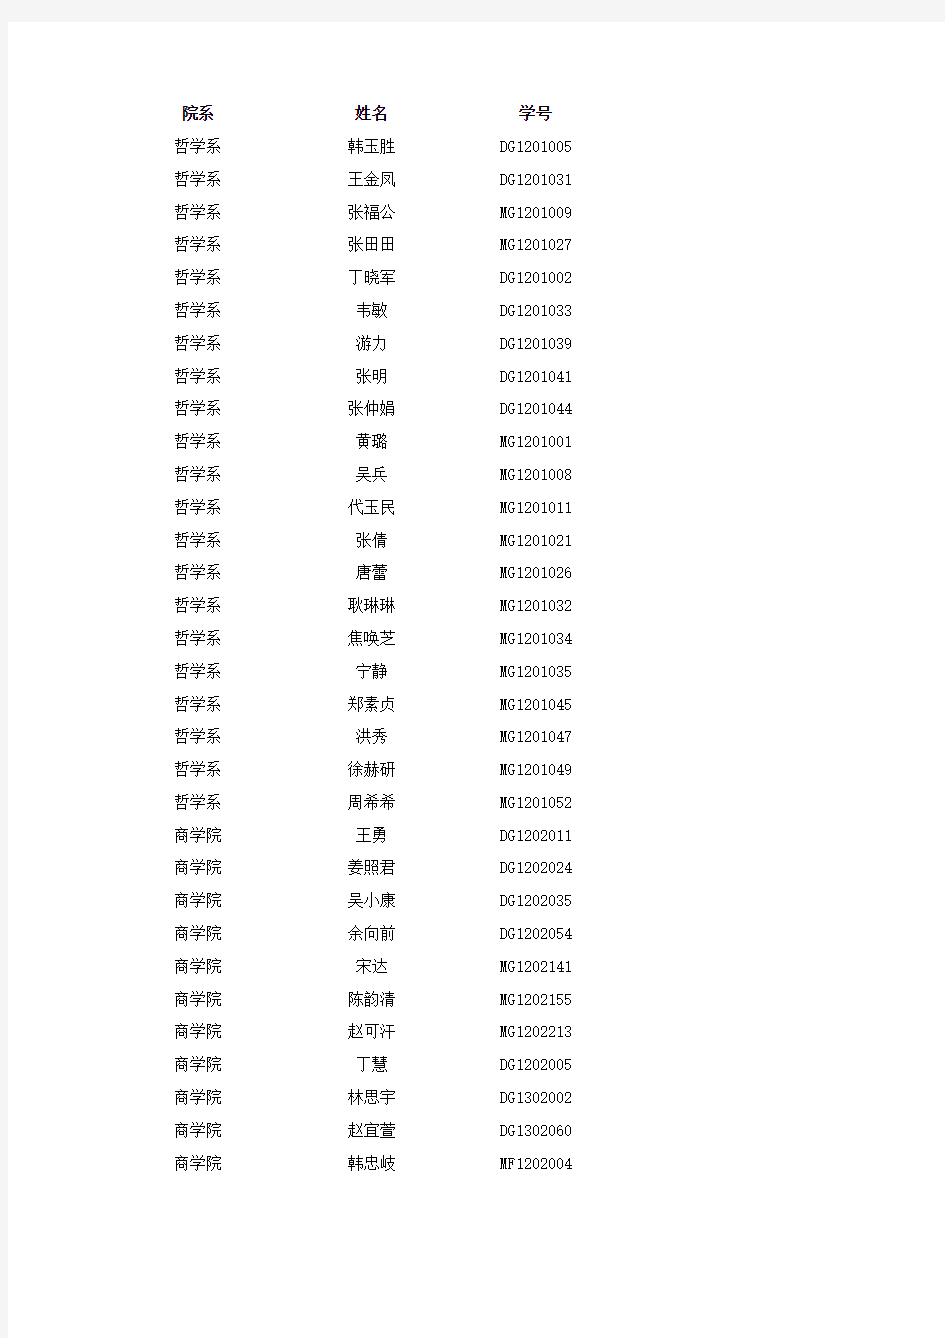 南京大学2014-2015学年优秀研究生评选公示名单